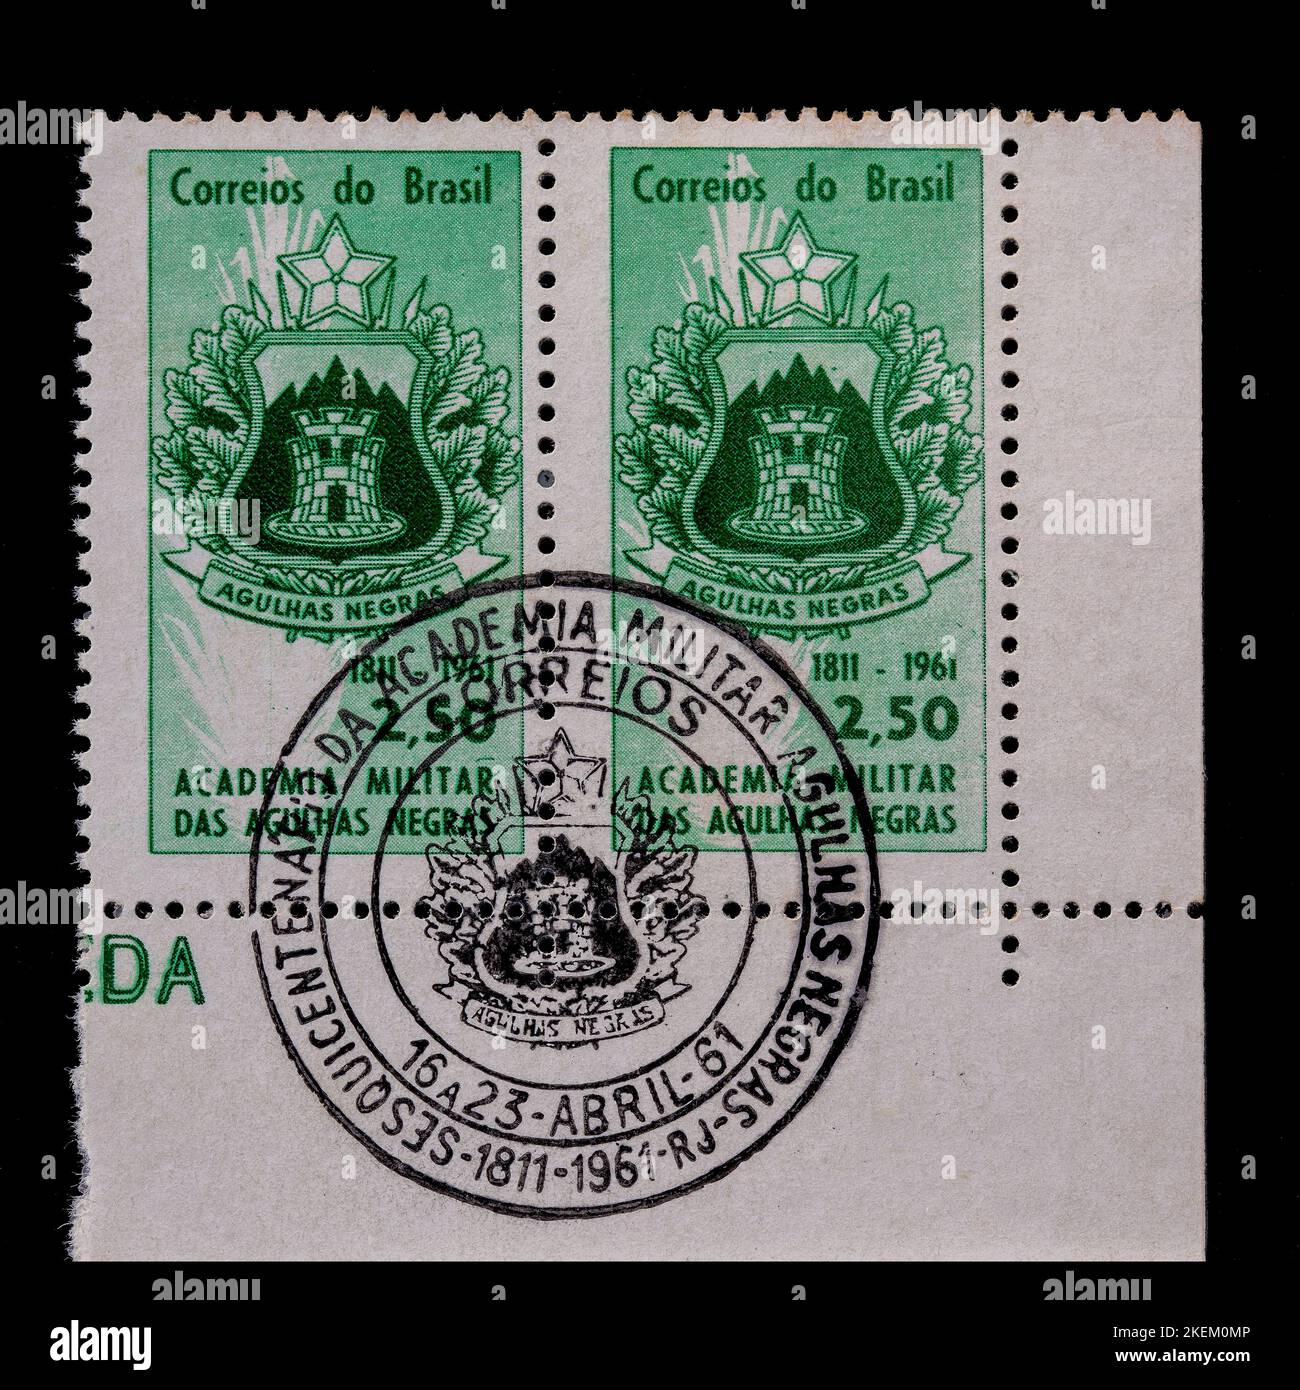 Vintage francobollo annullato dal Brasile circa 1961. Celebra il 150th° anniversario dell'Accademia militare Agulhas Negras 1811 - 1961. Foto Stock